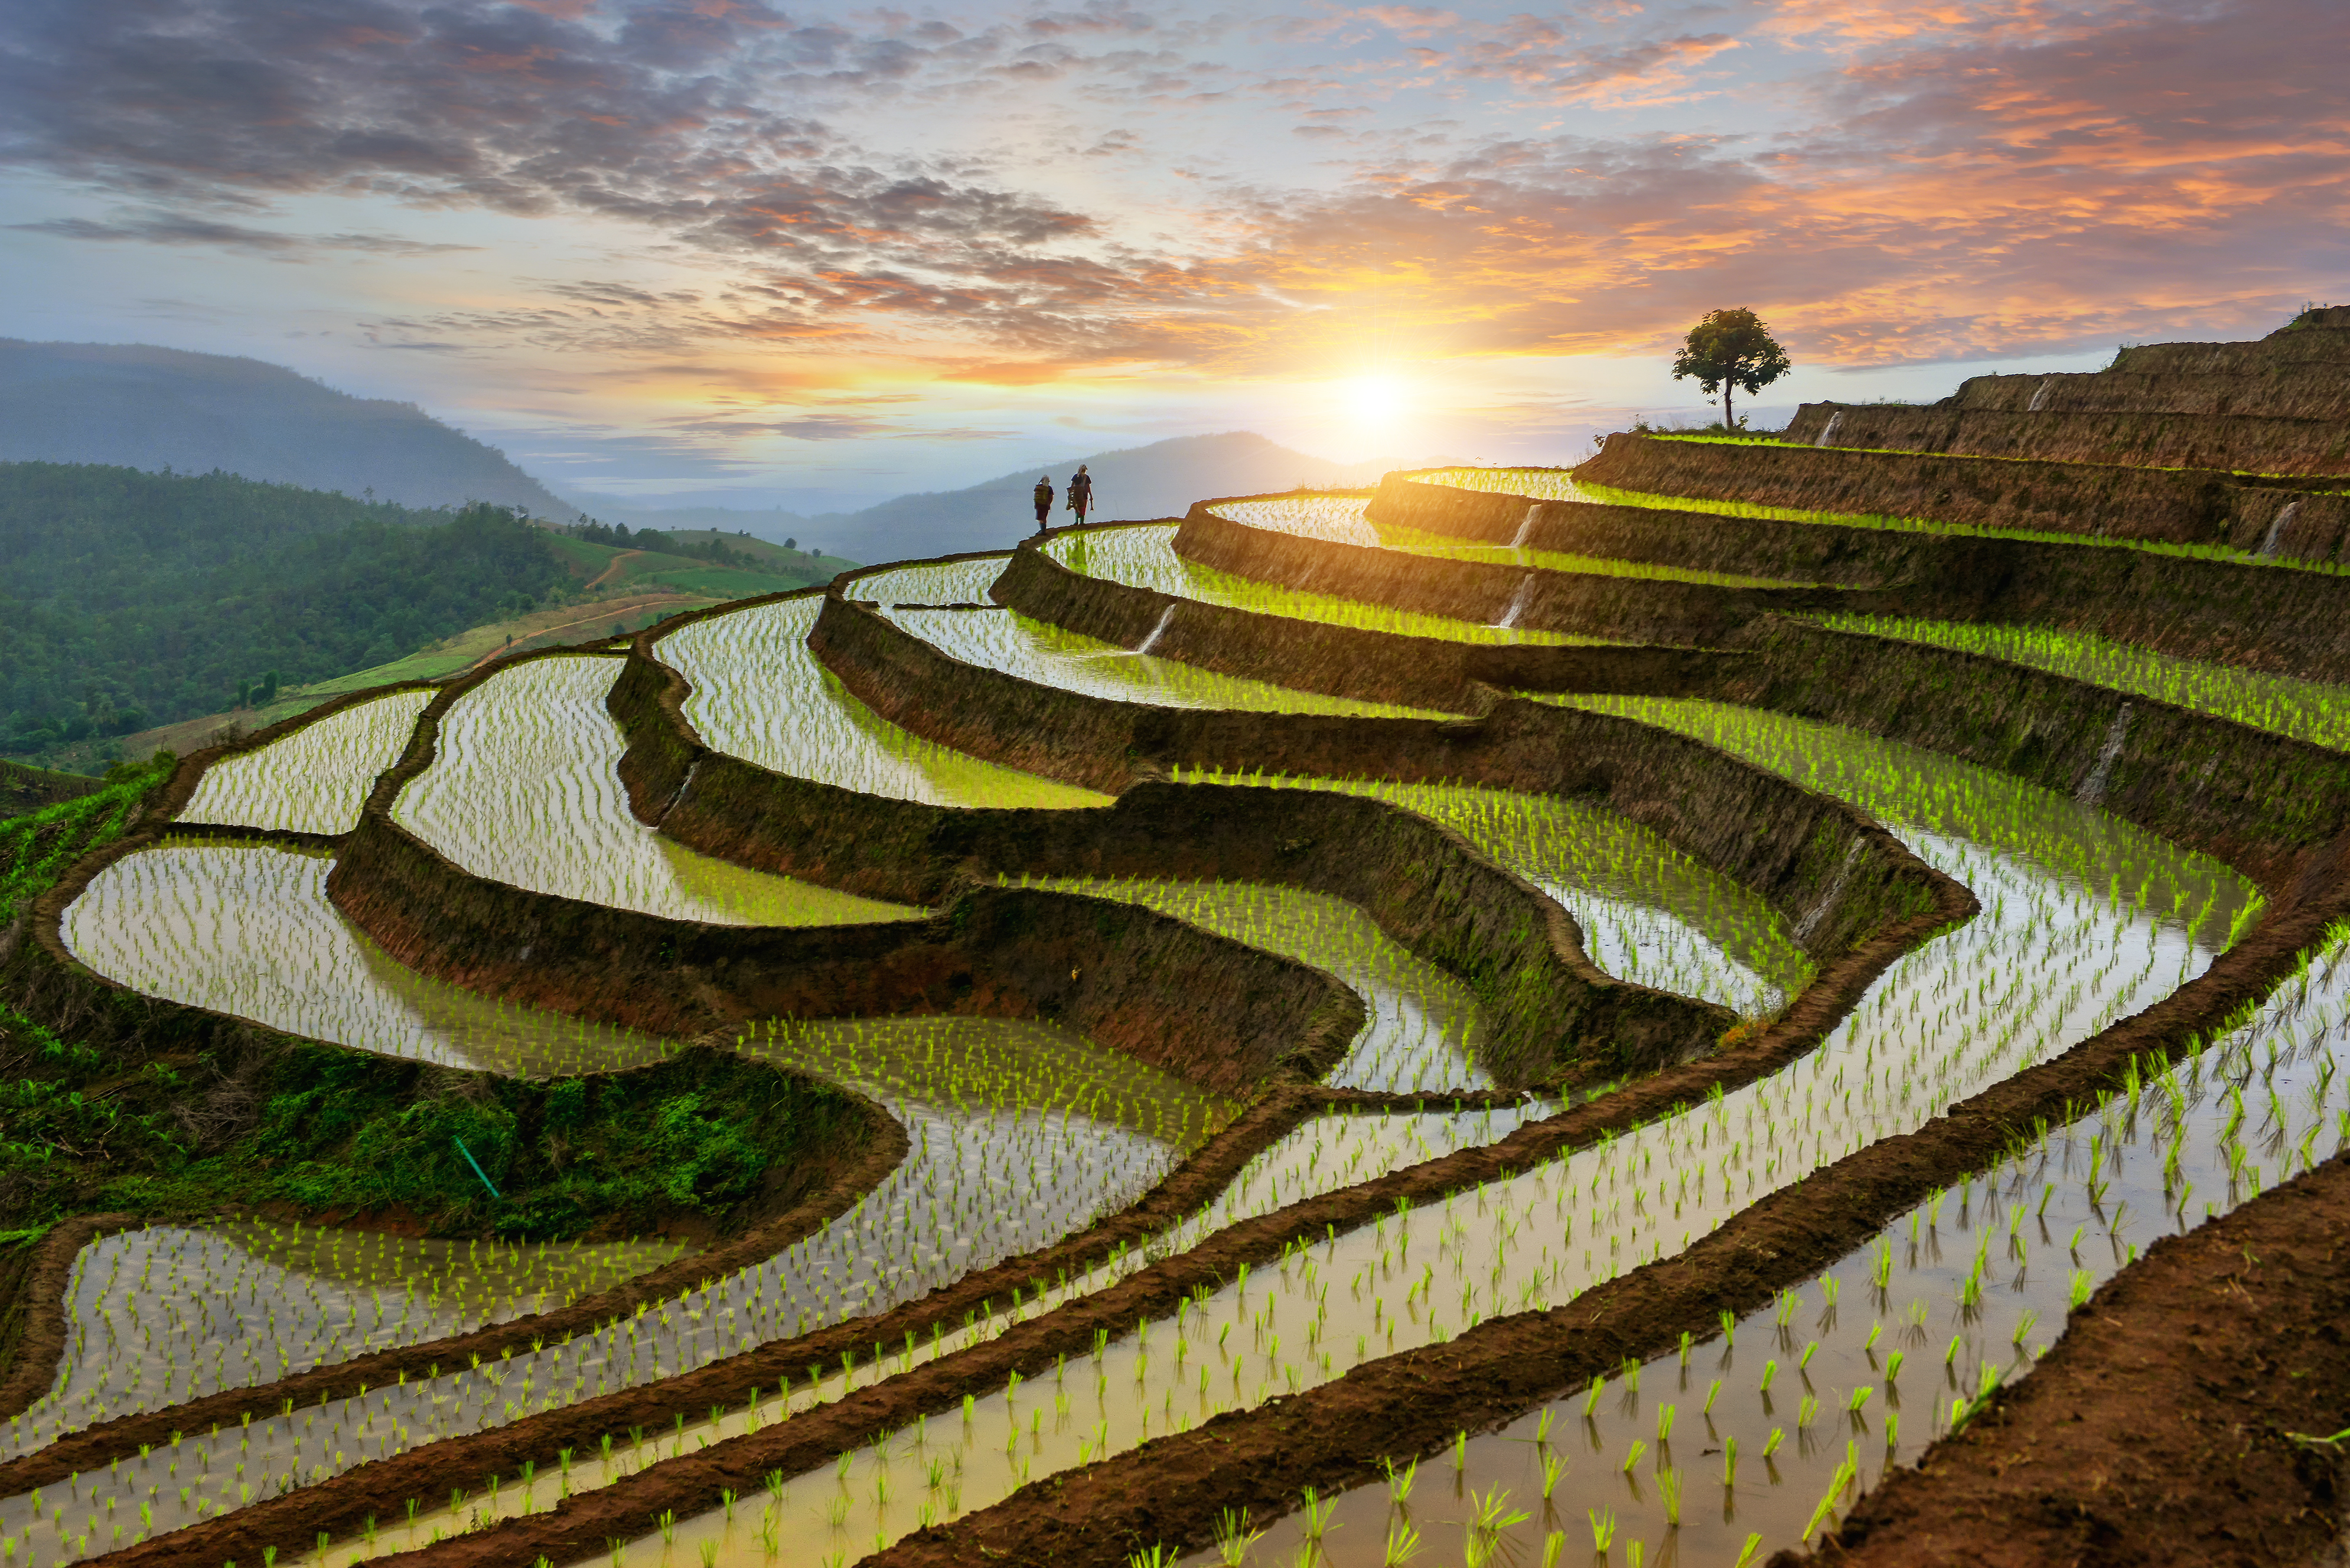 Thailand [Shutterstock]